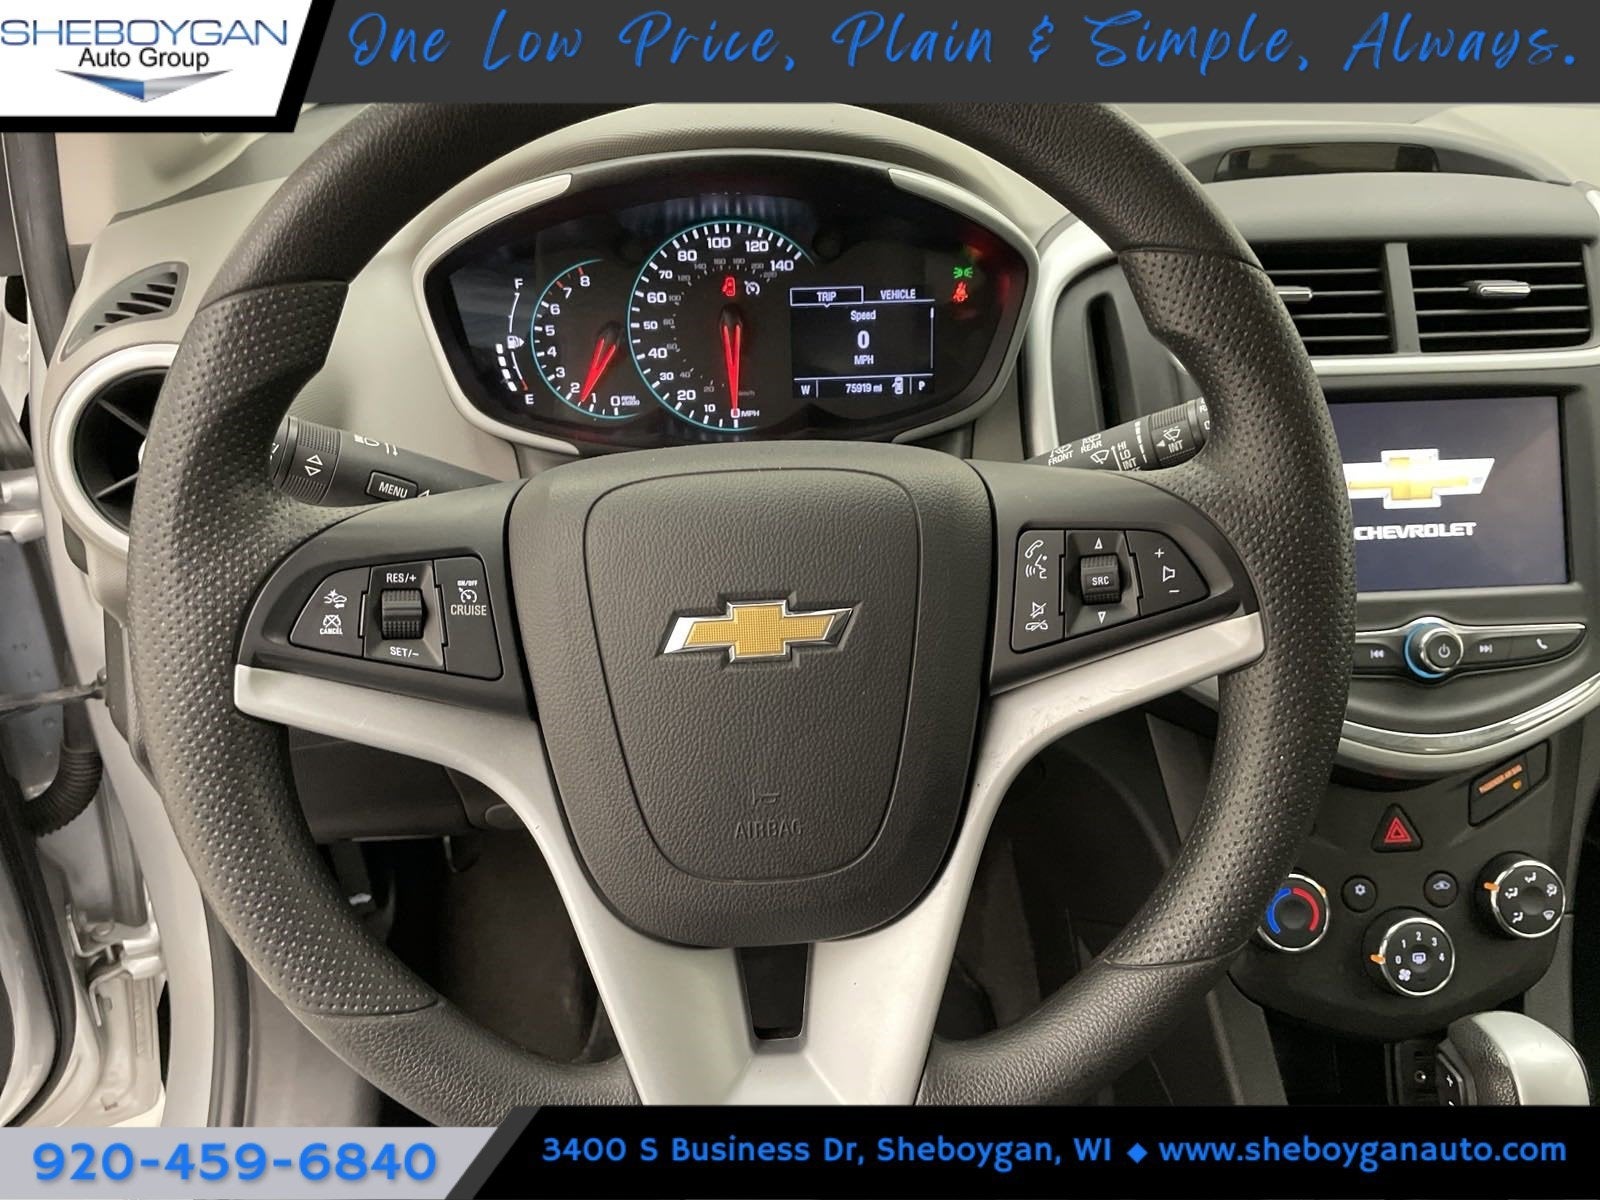 2020 Chevrolet Sonic FWD Hatchback 1FL 5-Door